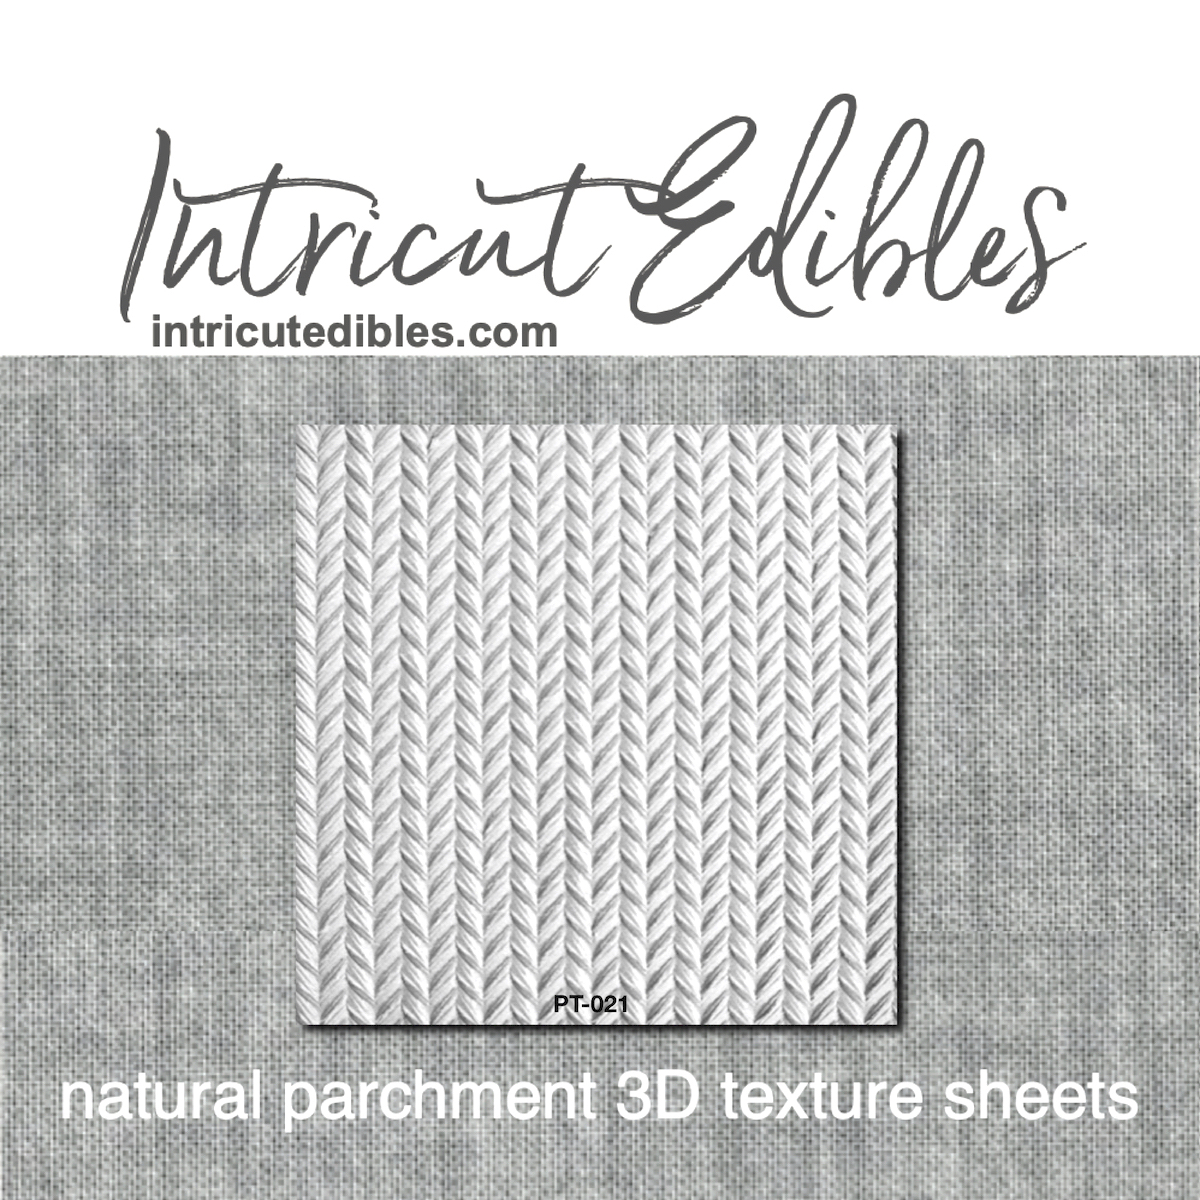 Intricut Edibles - Parchment Texture Designs For Your Desserts